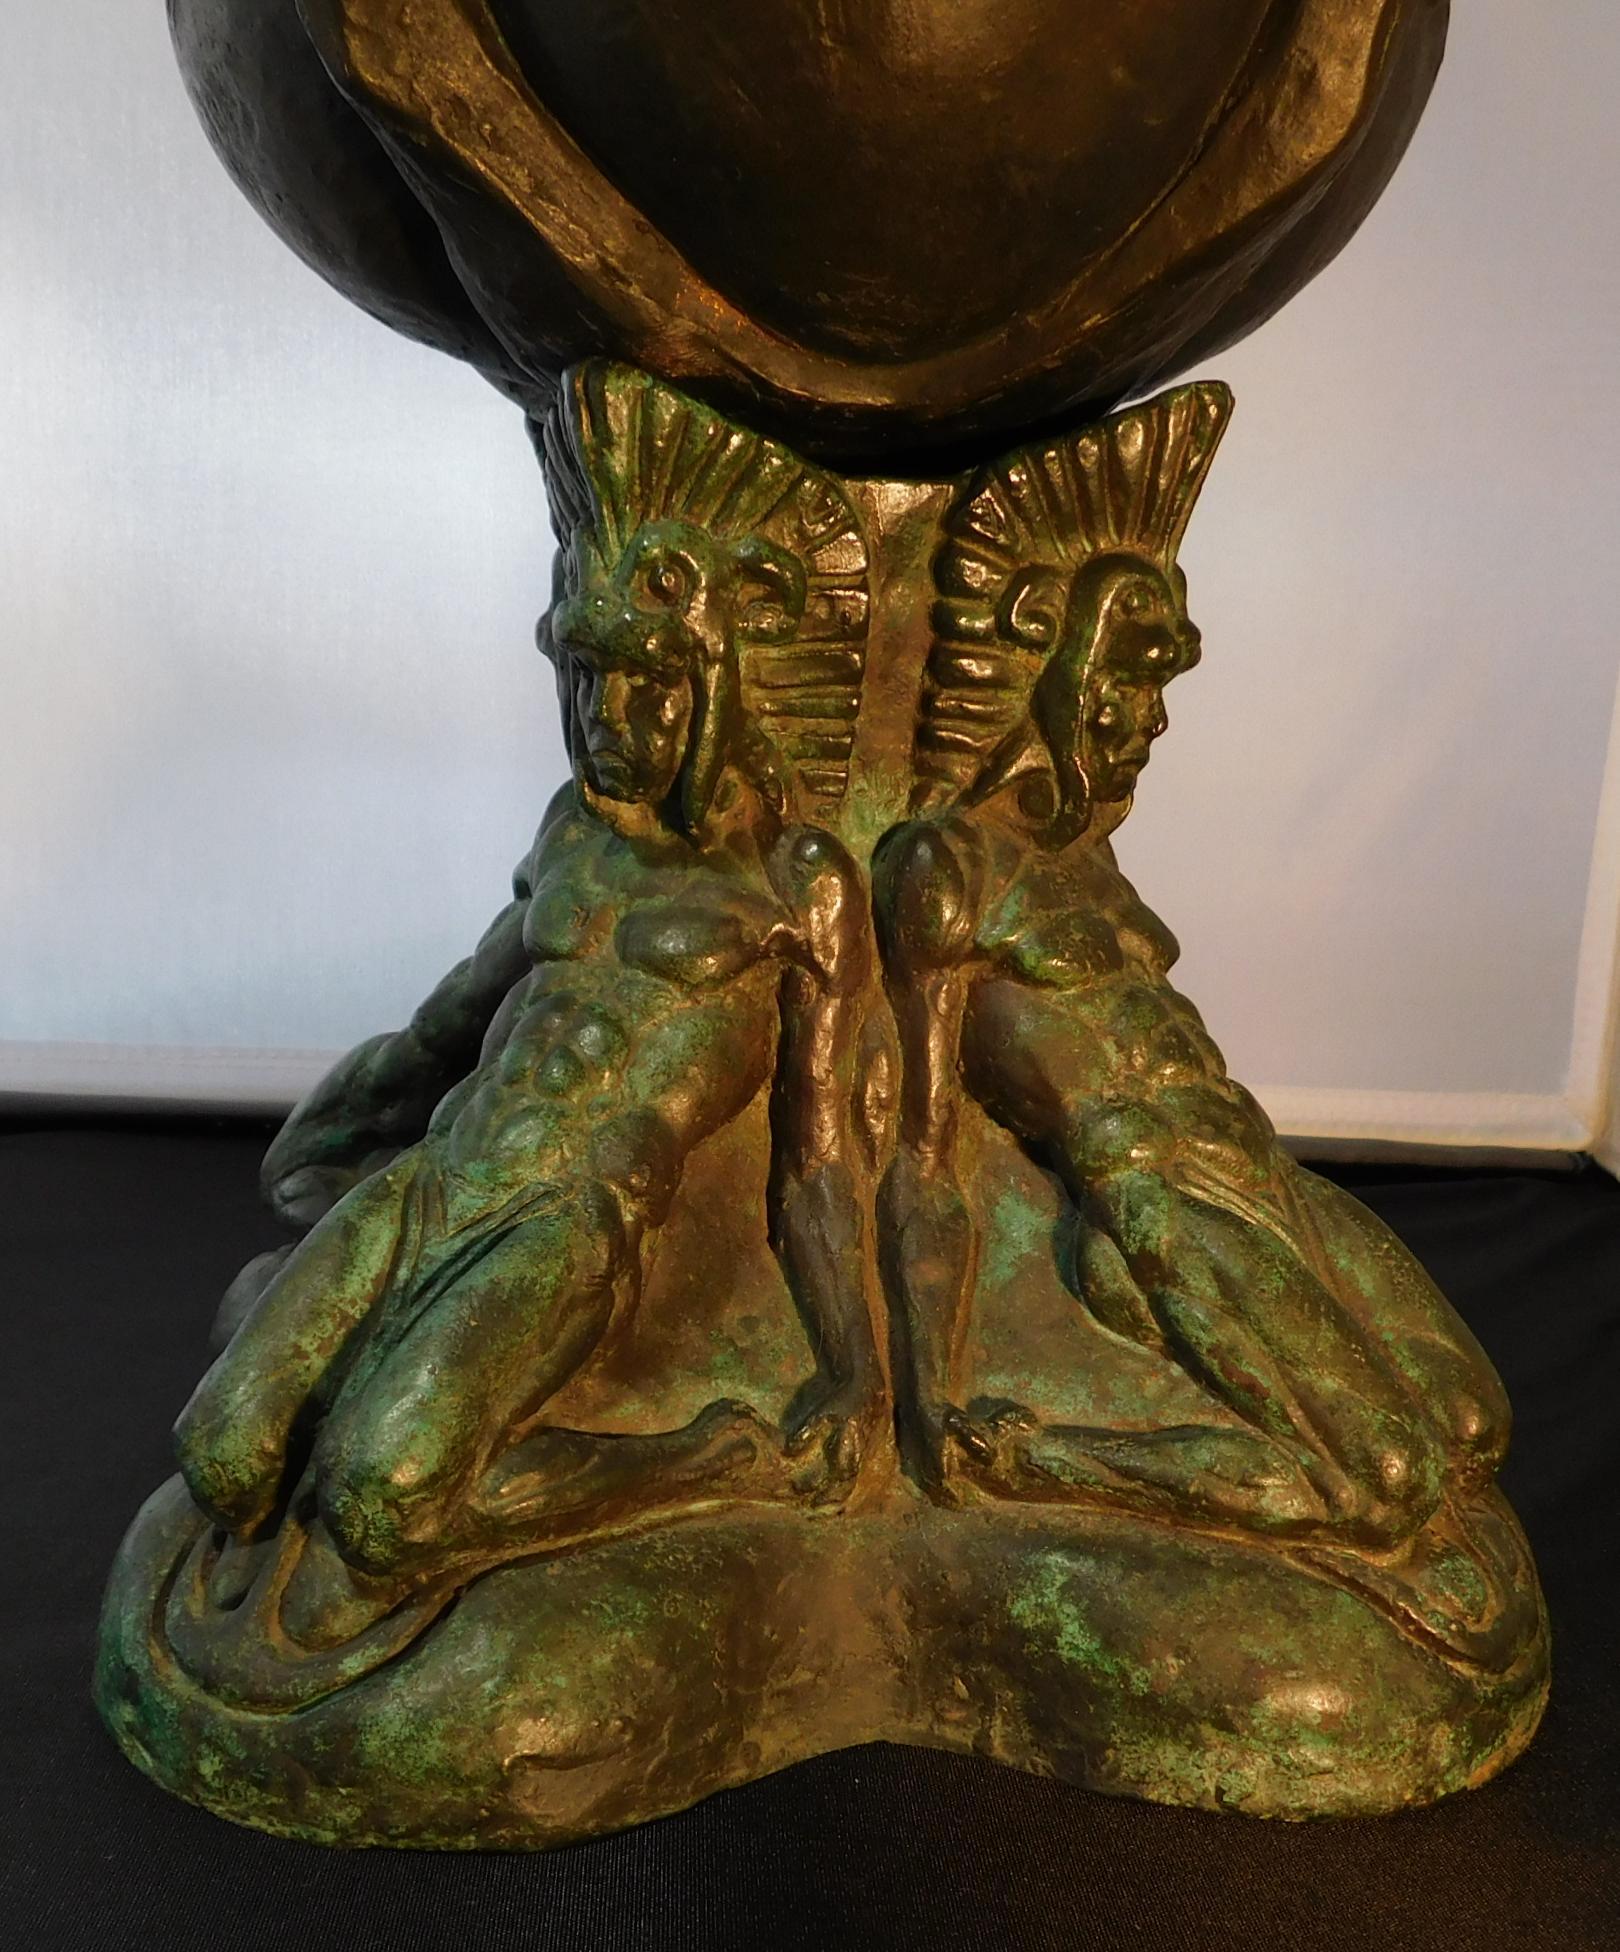 Donal hord bronze sculpture, 1926. “Kneeling Indians” 10